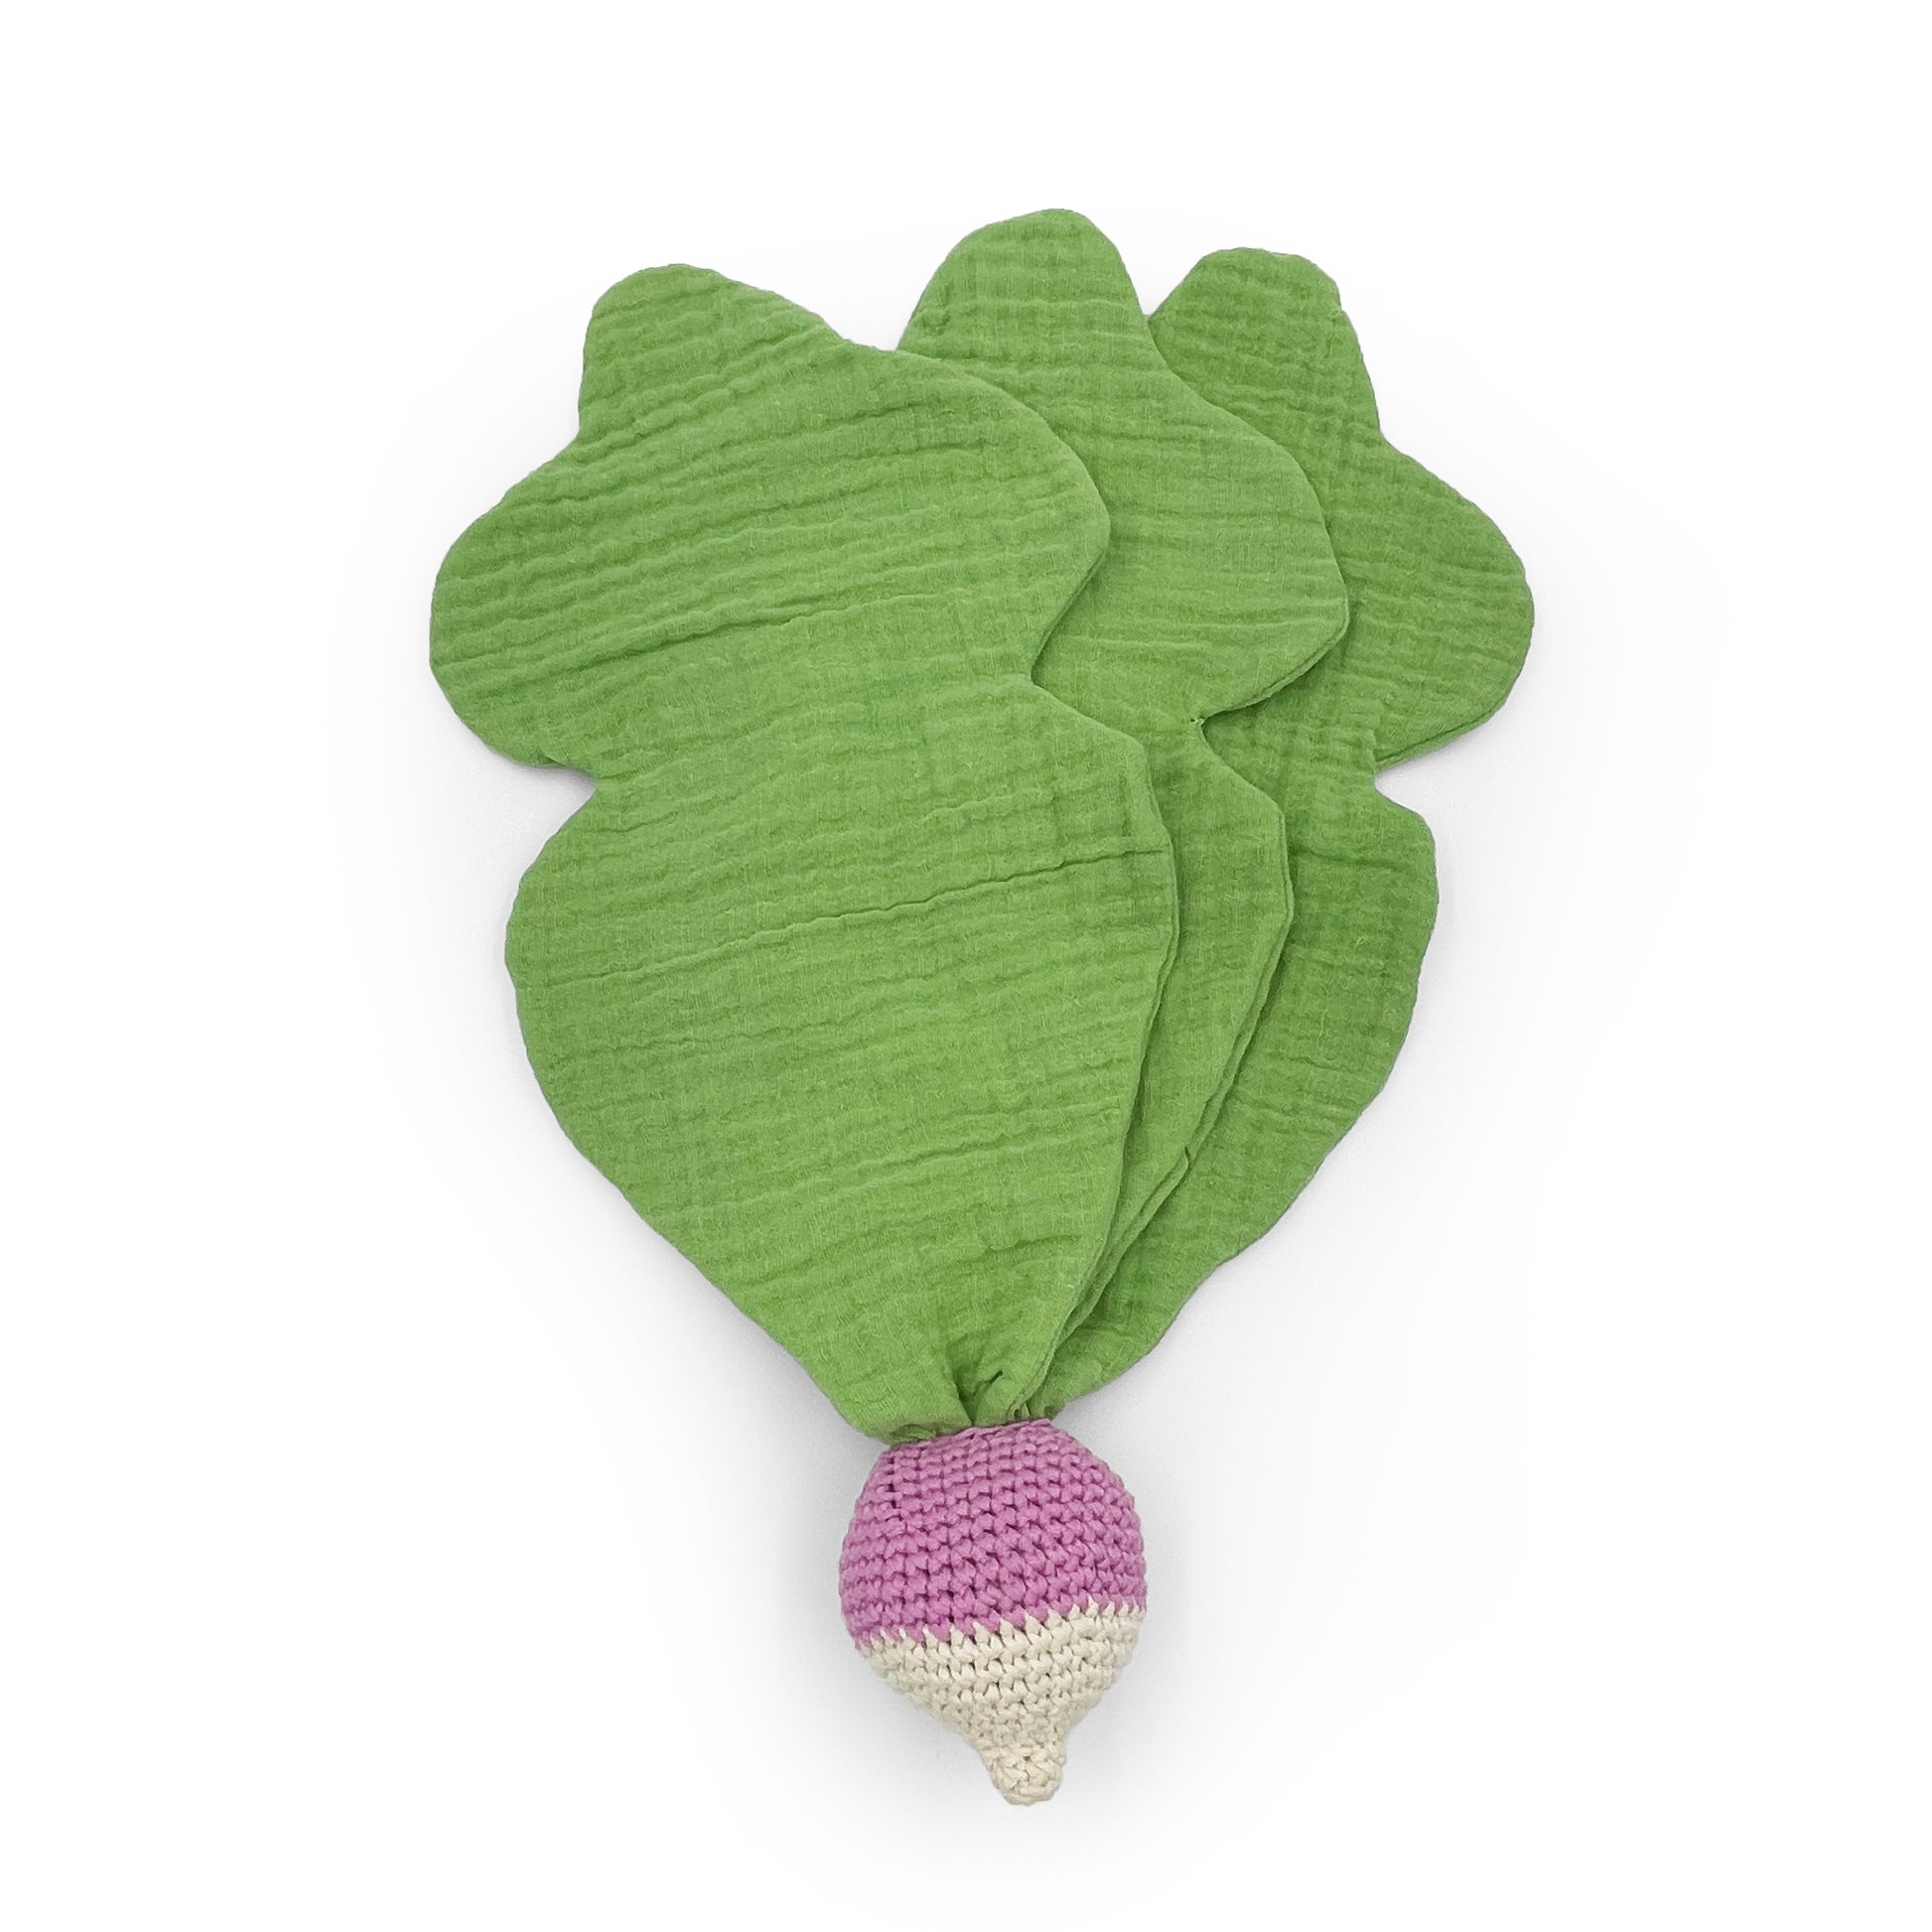 Doudou pour bébé radis blanc et mauve, feuilles vertes, en coton biologique certifié GOTS et crochet fait à la main.